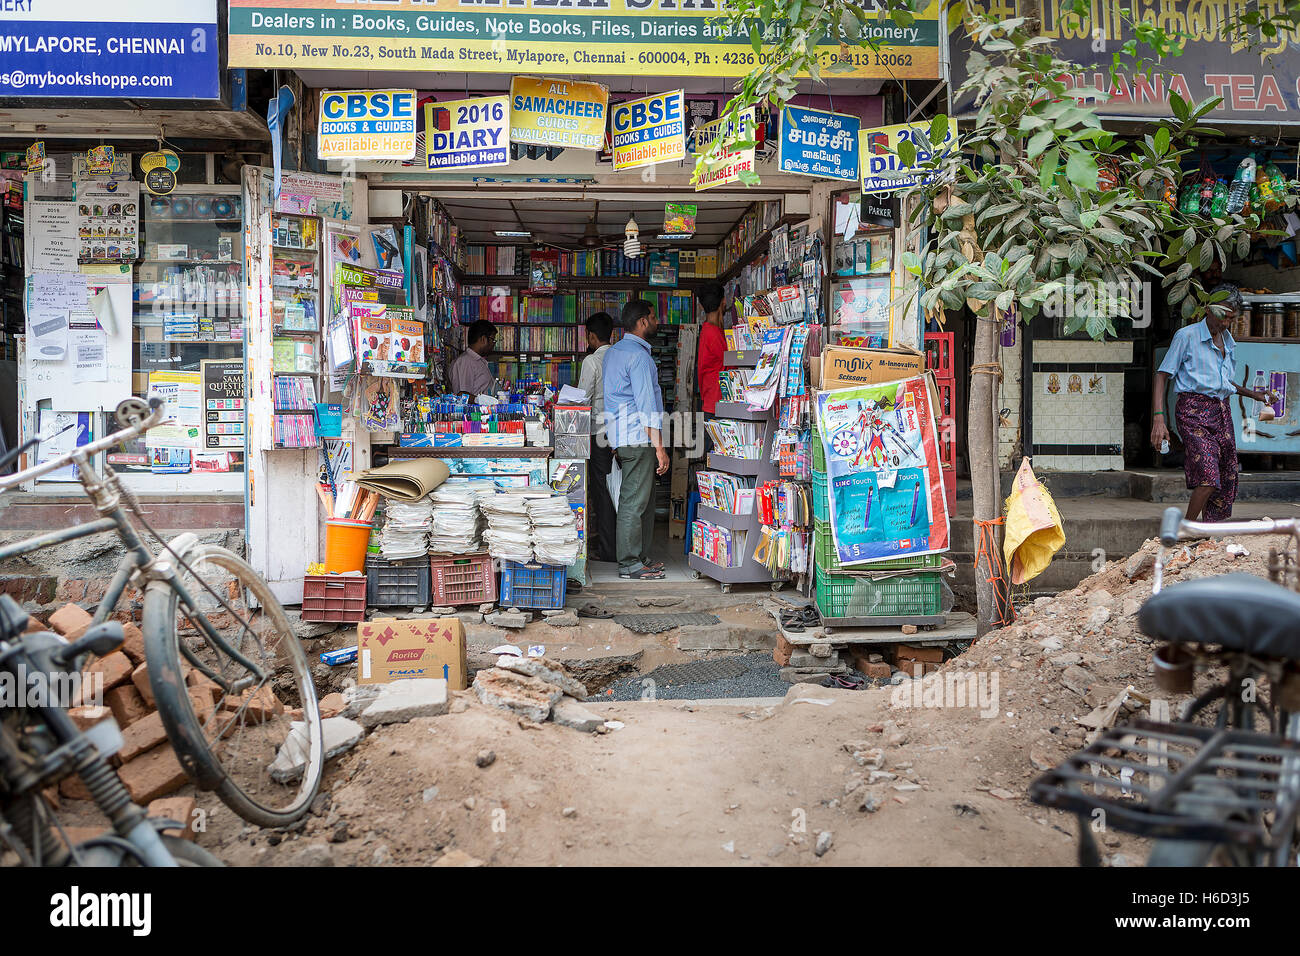 Menschen beim Einkaufen in einem indischen Buchhandlung in einer heruntergekommenen Gegend von Mylapore, Chennai, Tamil Nadu, Indien Stockfoto